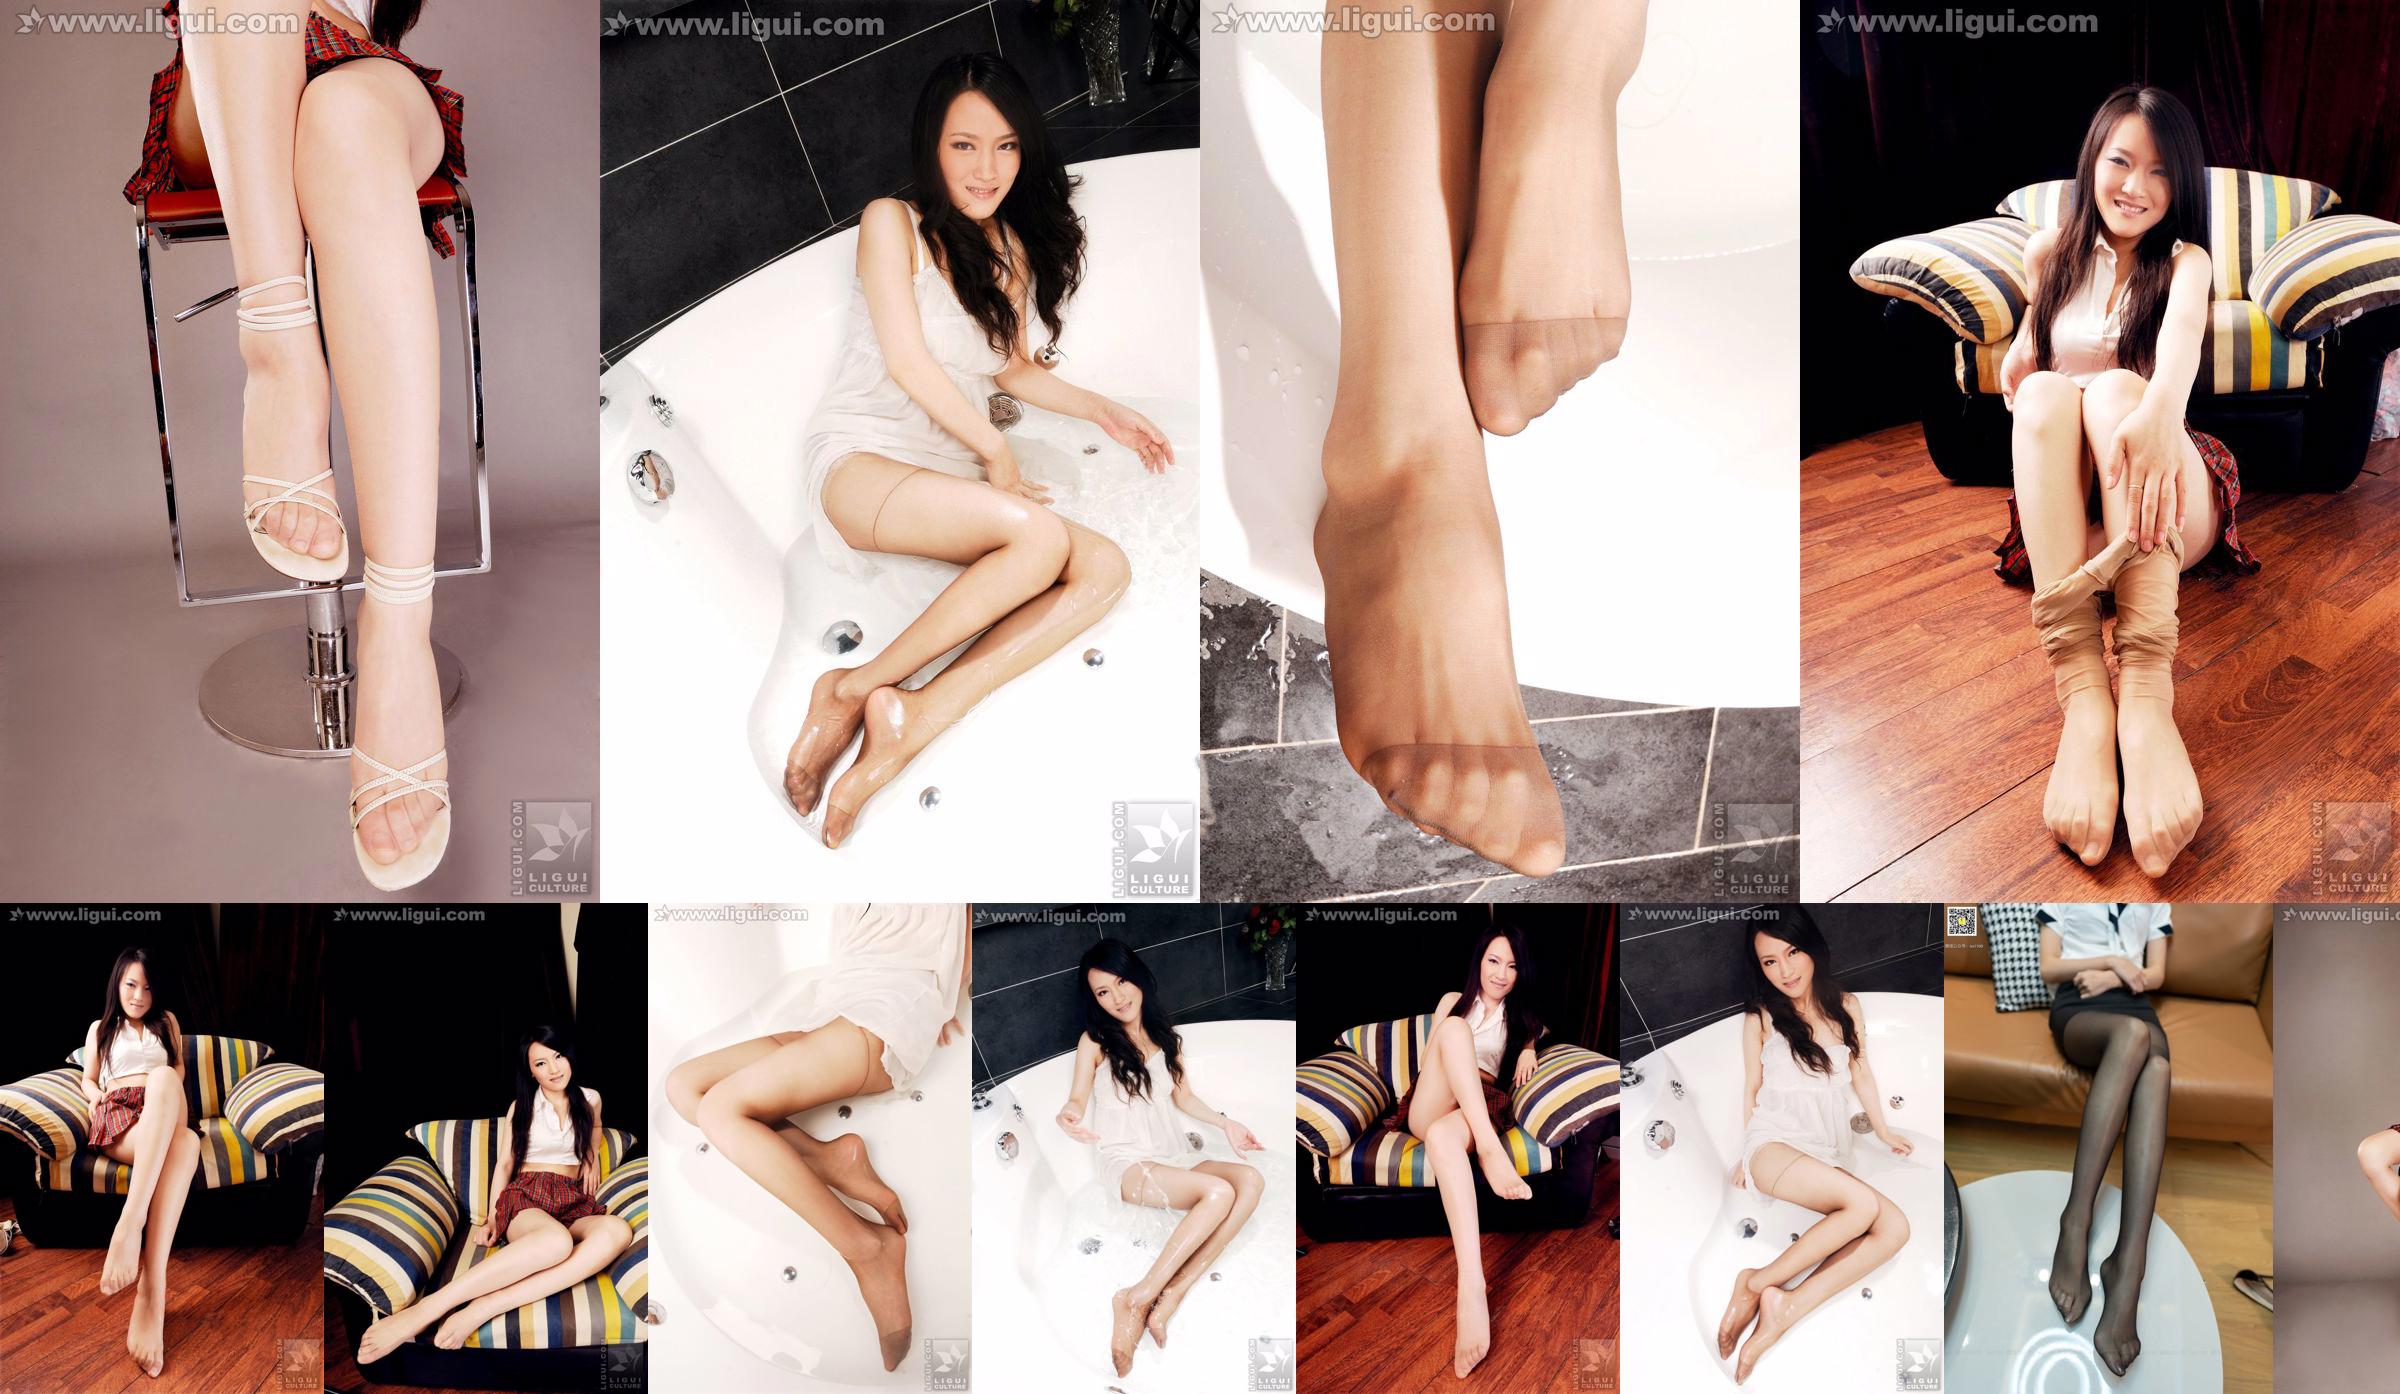 Modelo Wen Ting "Pés puros e bonitos" [丽 柜 LiGui] Foto de pé de seda com foto No.3b4eb5 Página 8